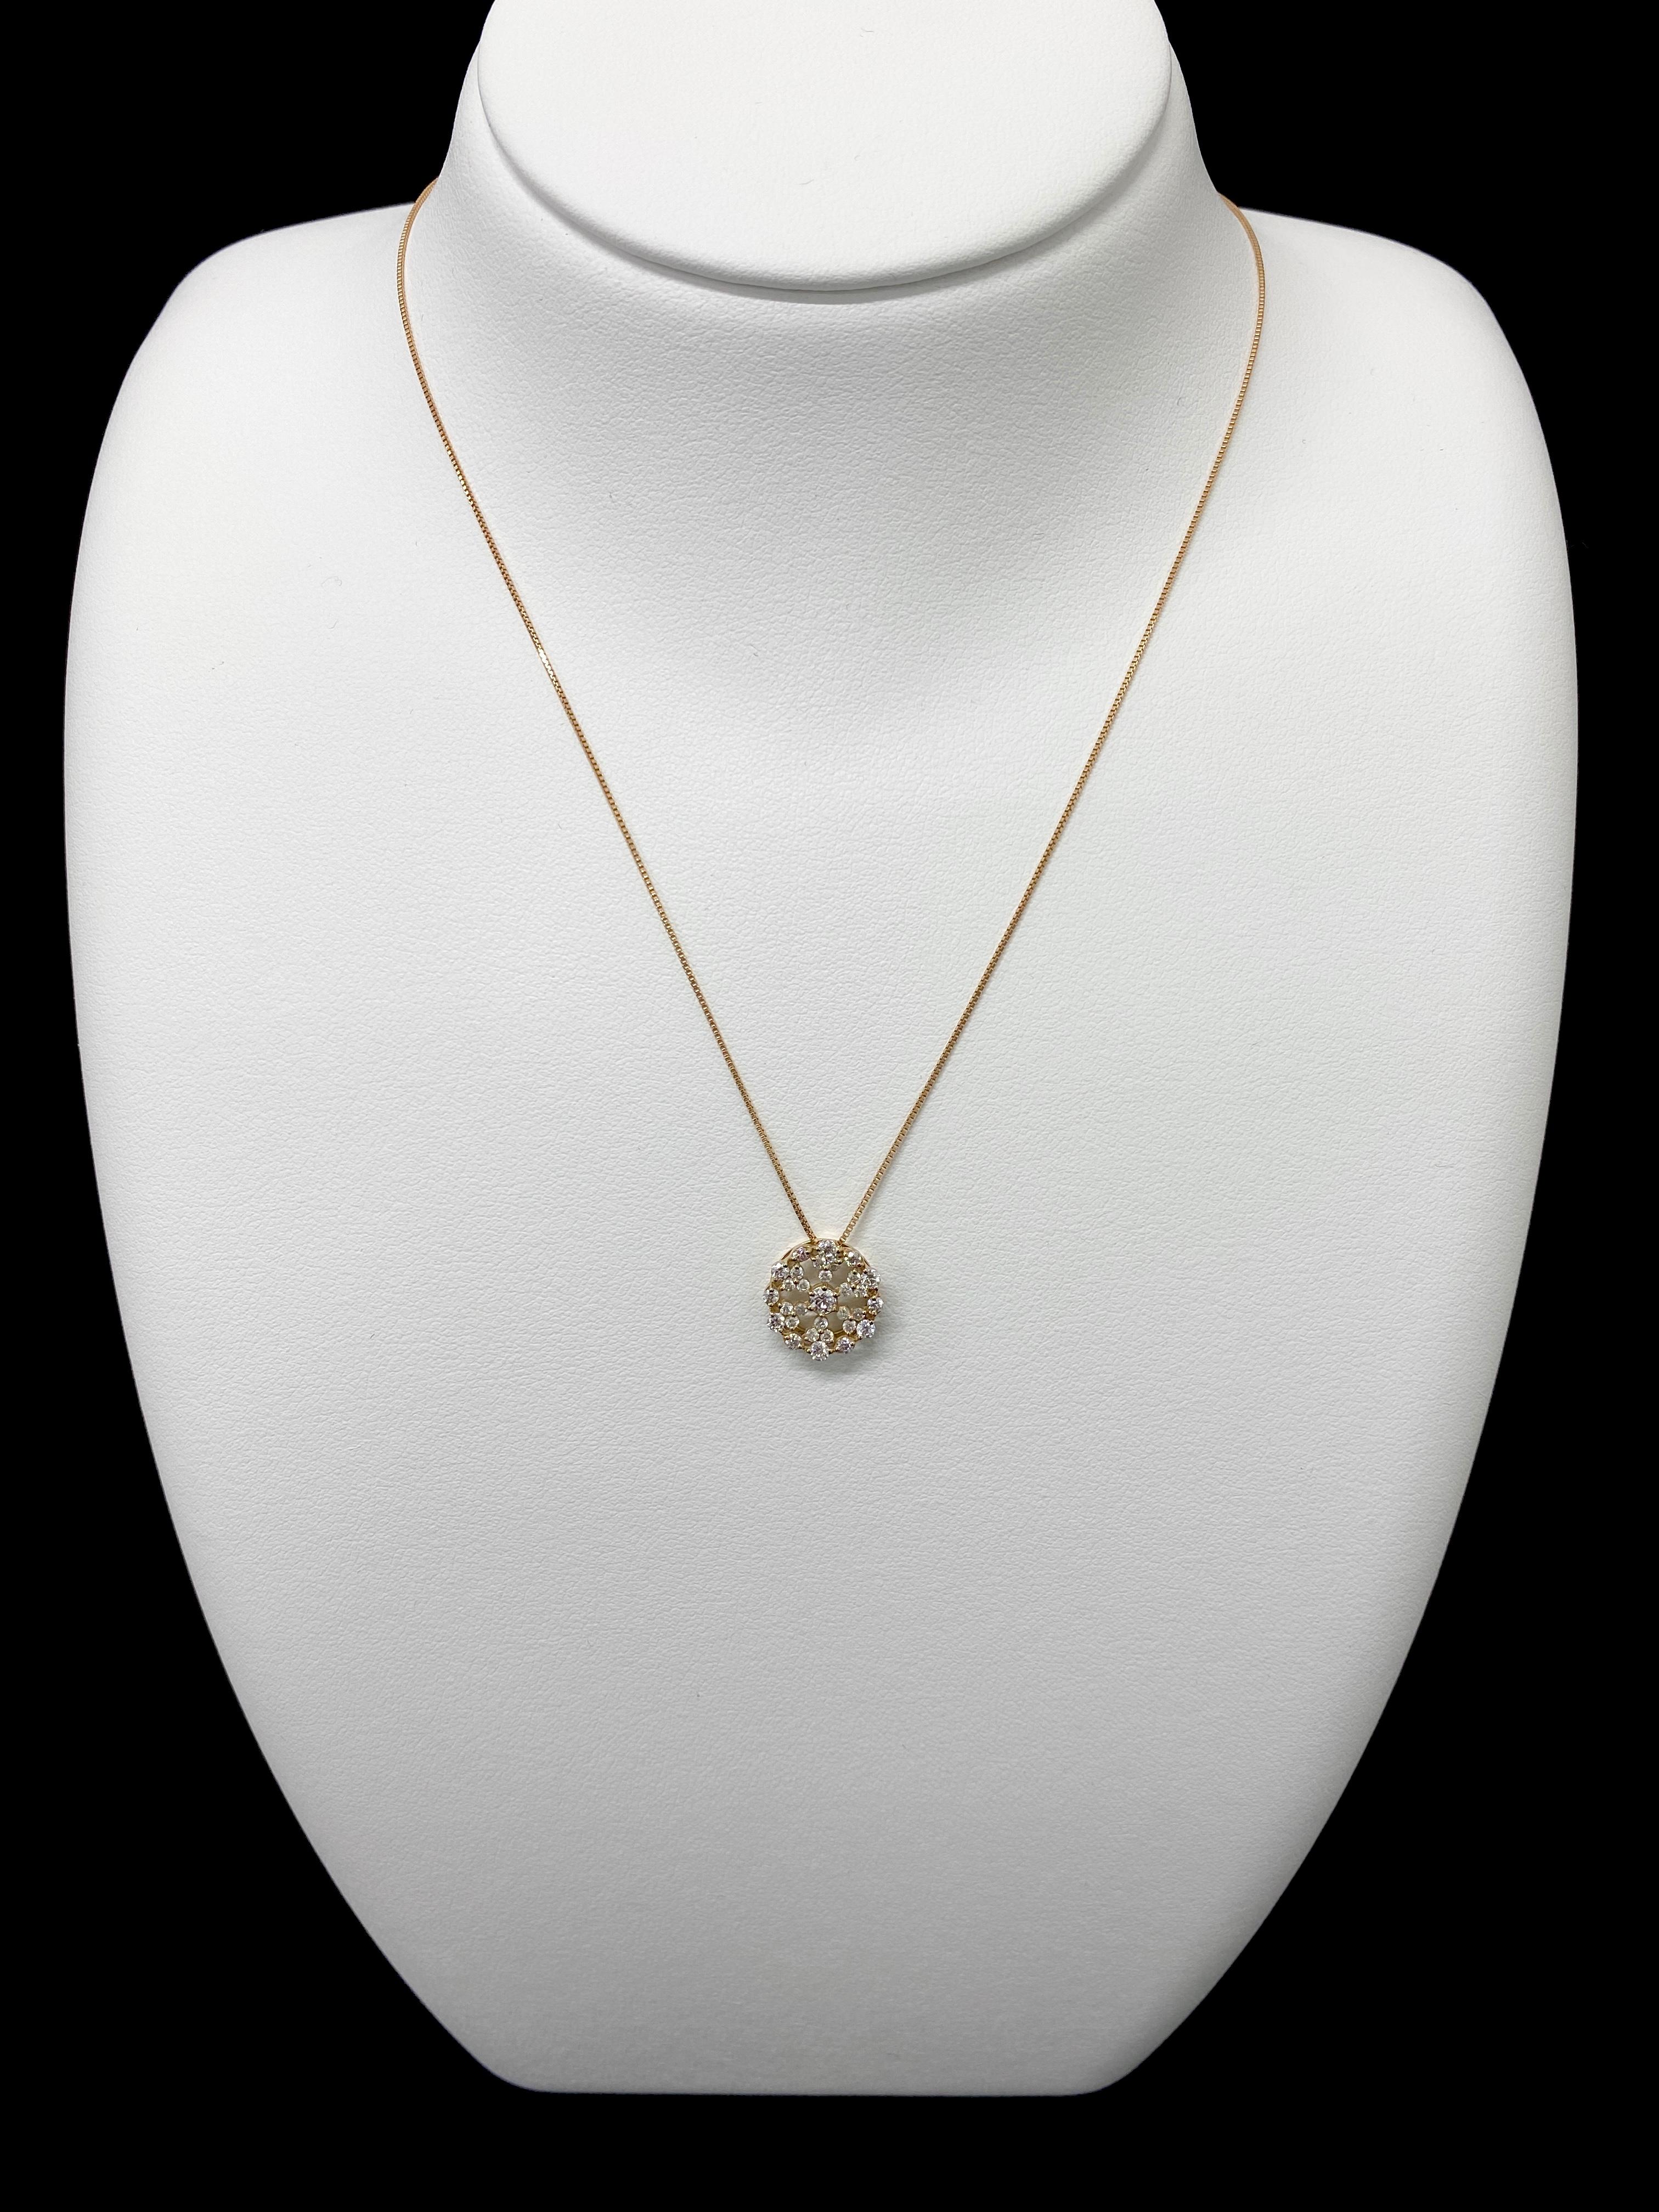 Un collier pendentif étonnant avec un diamant de 0,87 carats serti dans de l'or rose 18 carats. Les diamants ont été parés et chéris tout au long de l'histoire de l'humanité et remontent à des milliers d'années. Ils sont classés 10 sur l'échelle de